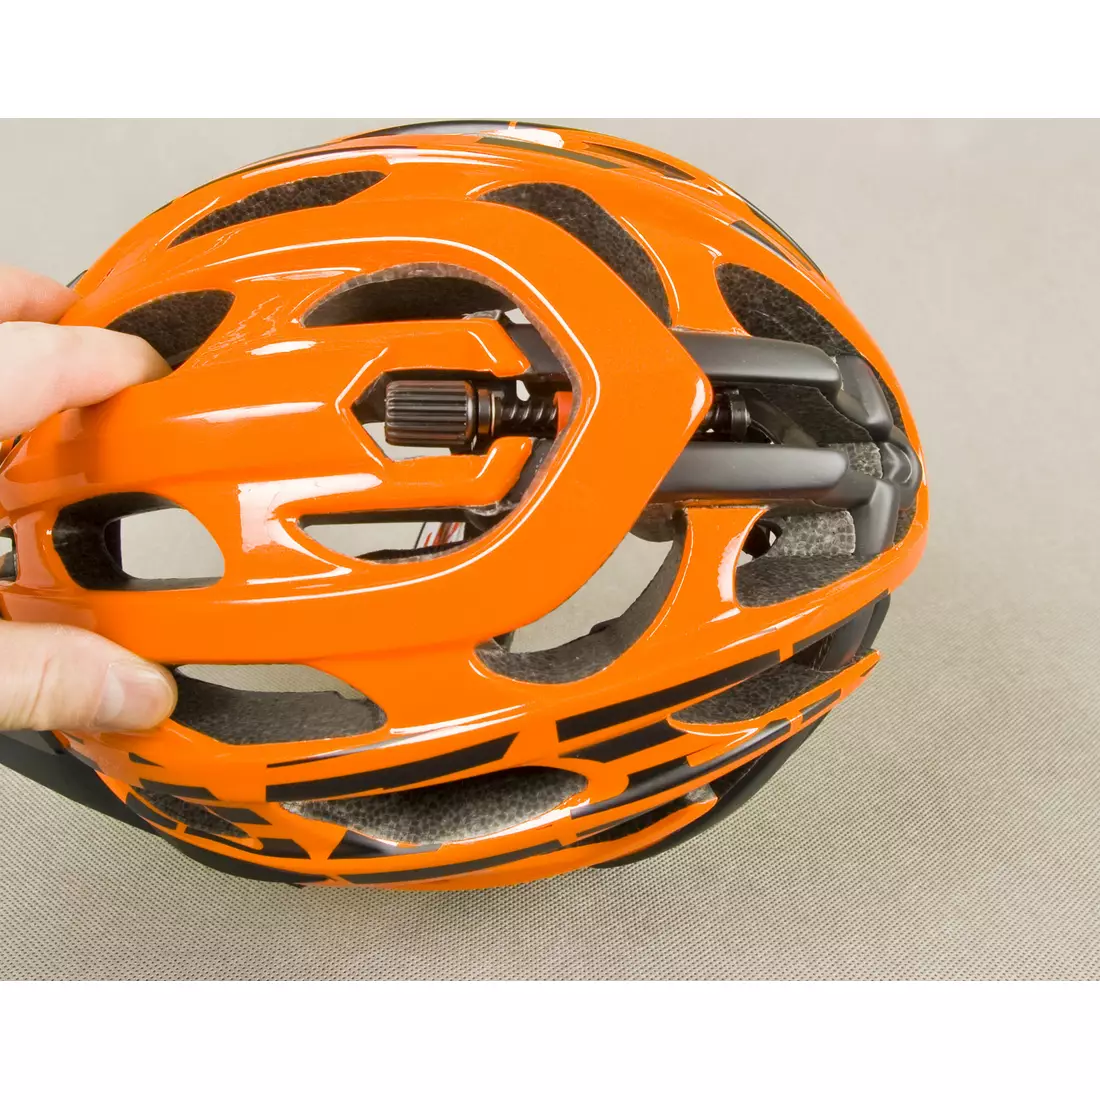 Casca de bicicleta LAZER MAGMA MTB portocaliu